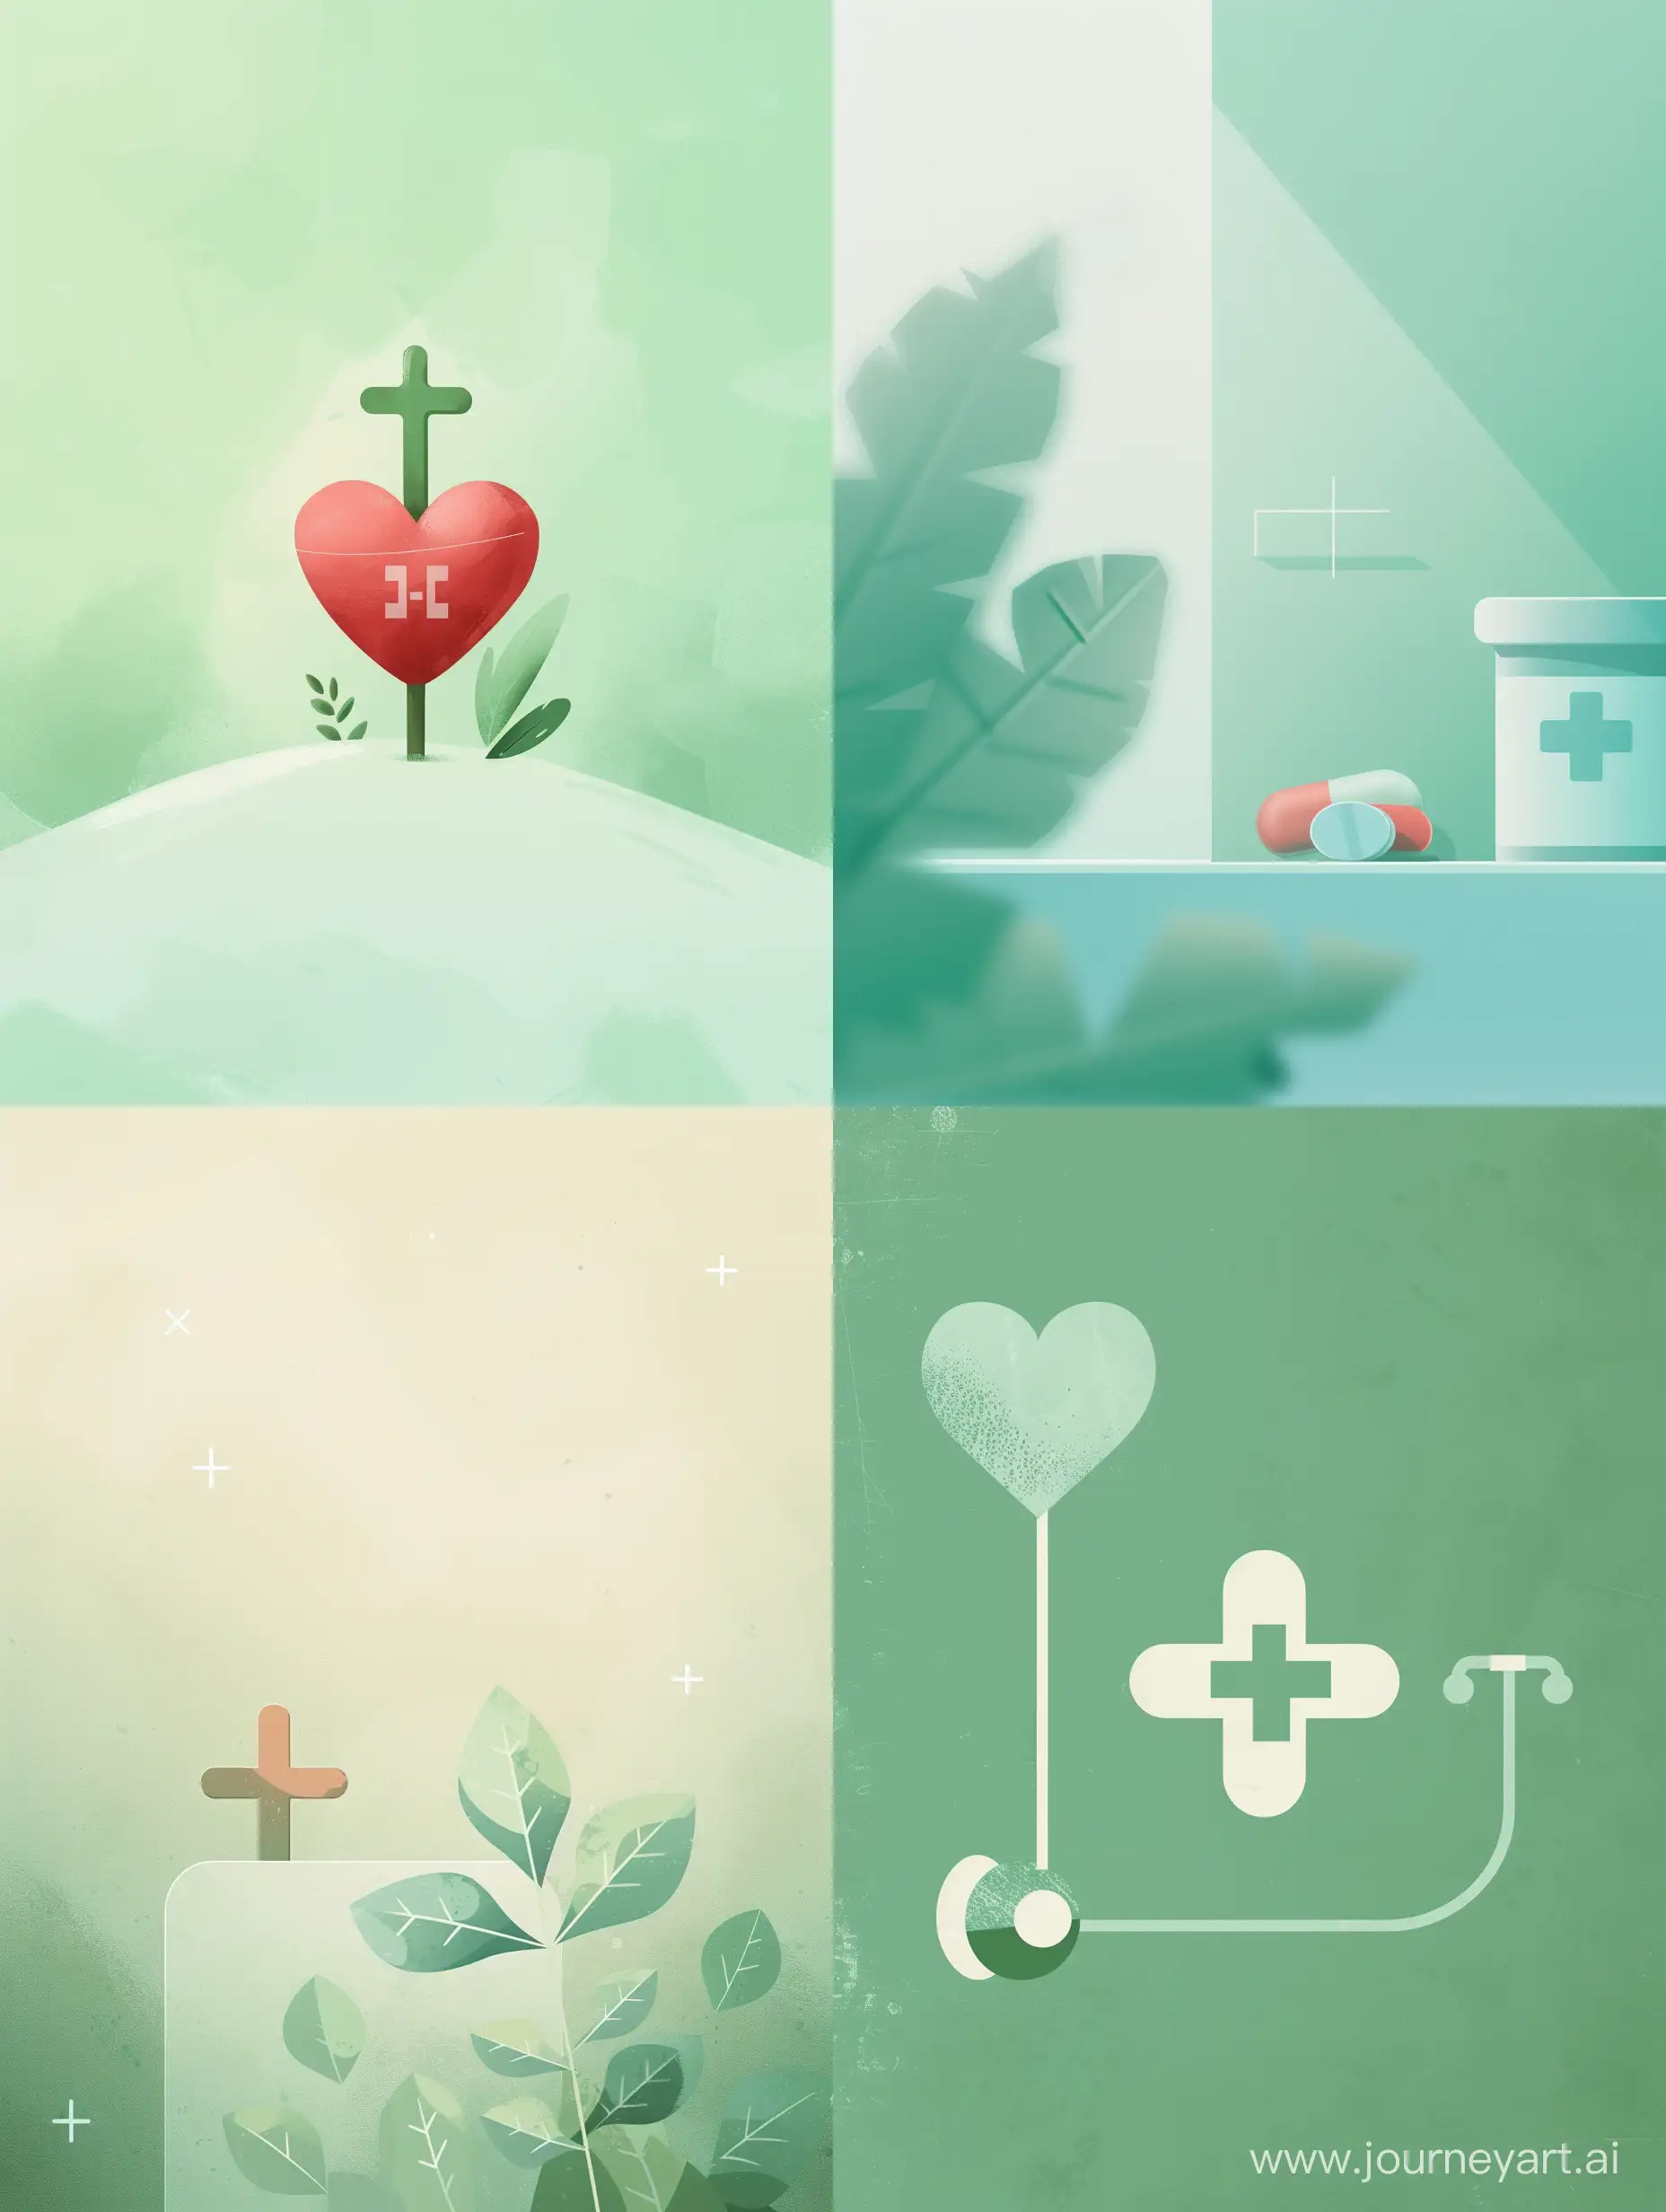 стильная минималистичная иллюстрация  демонстрирующая благодарность пациенту за запись в медицинский центр, на заднем плане маленький медицинский крестик  нежно зеленого оттенка